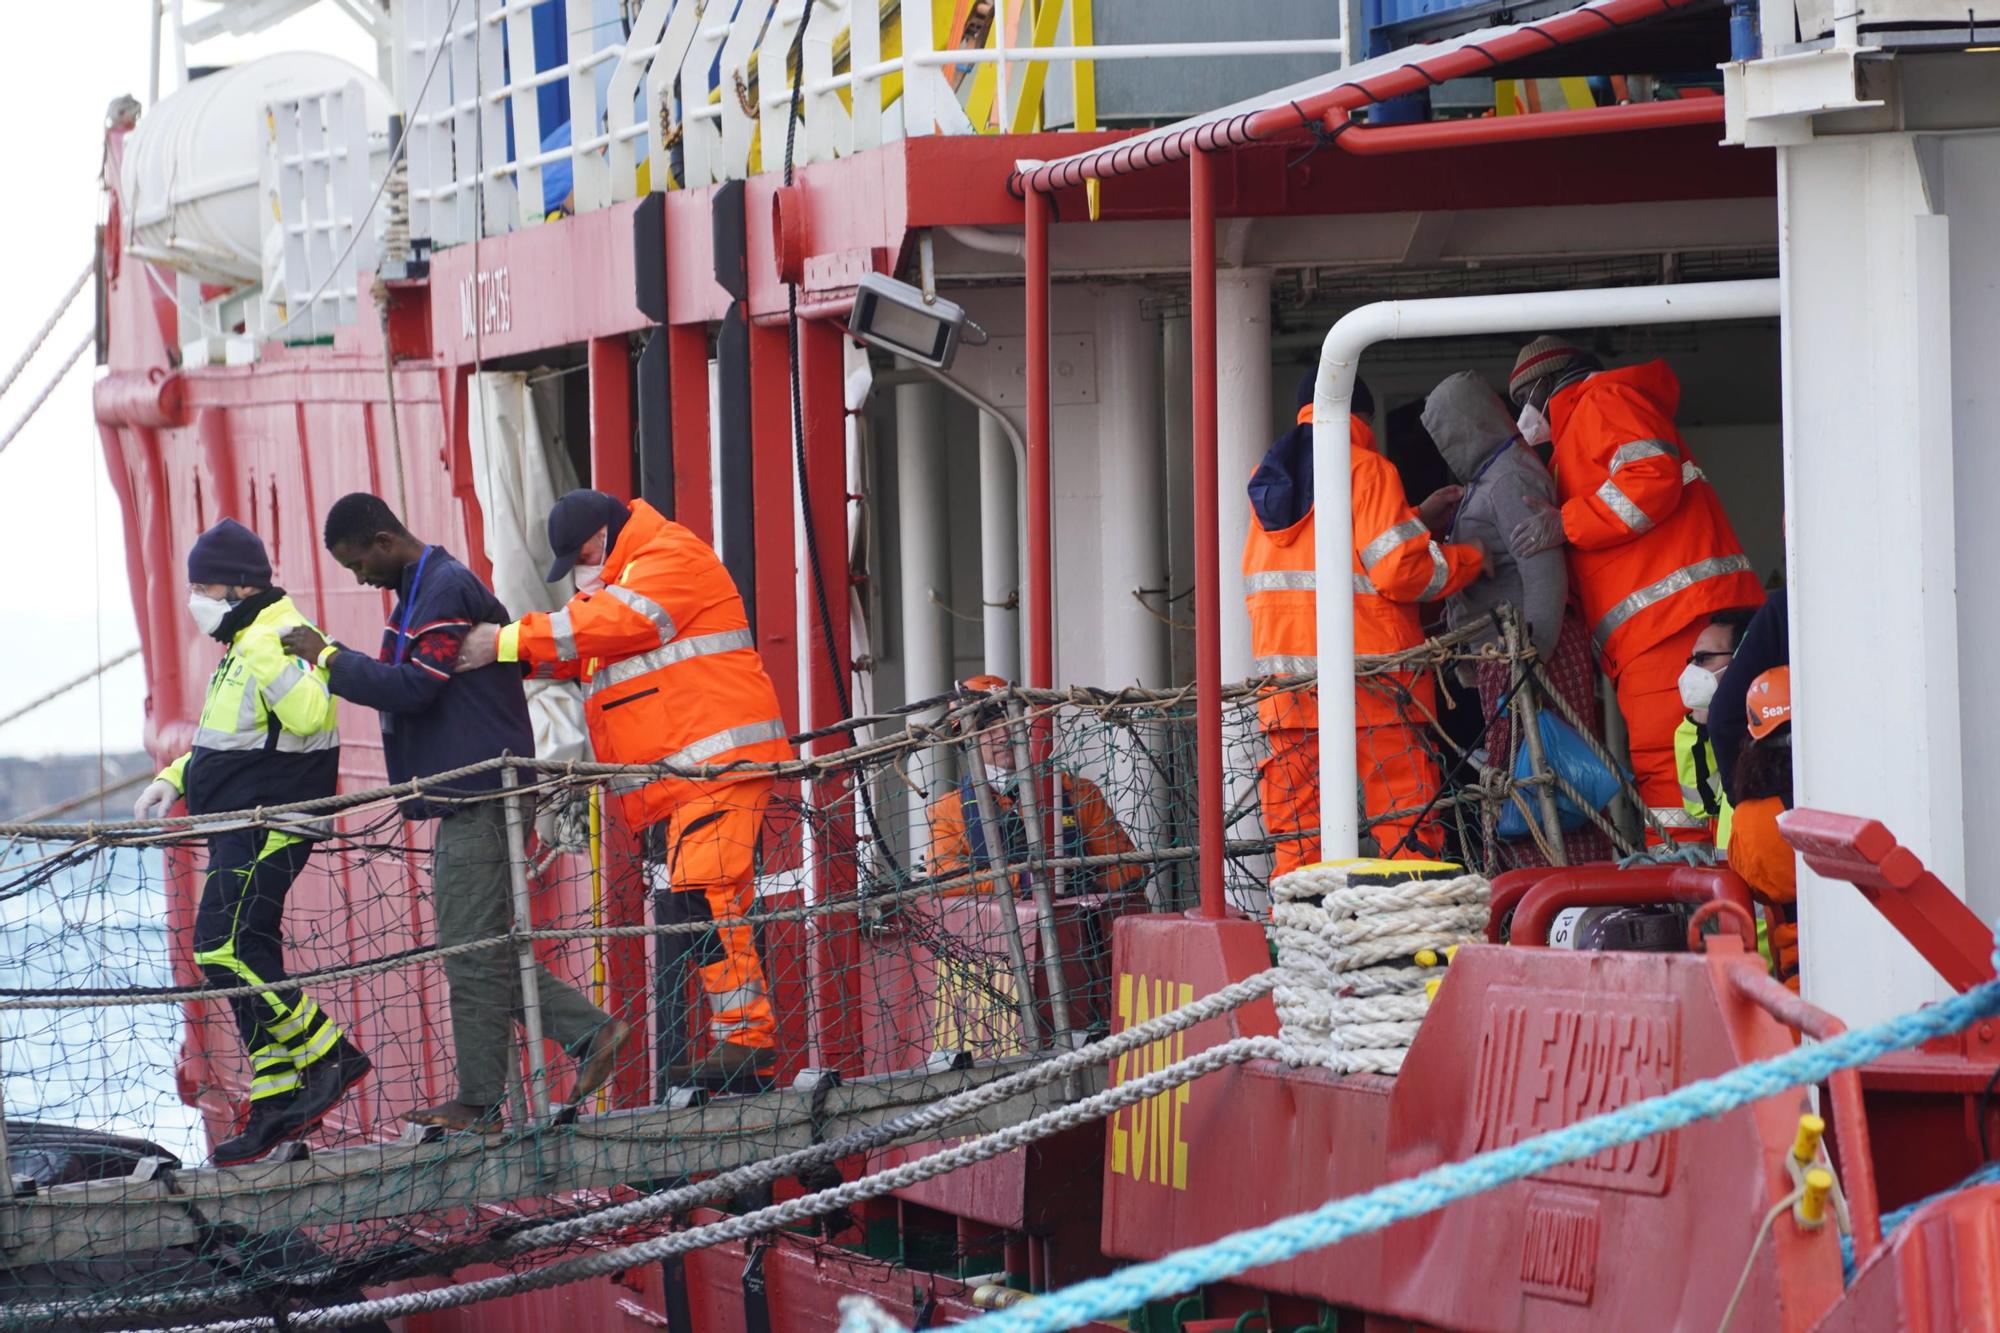 Unos migrantes son ayudados a desembarcar en el puerto de Nápoles tras ser rescatados en el Mediterráneo, el pasado mes de febrero.